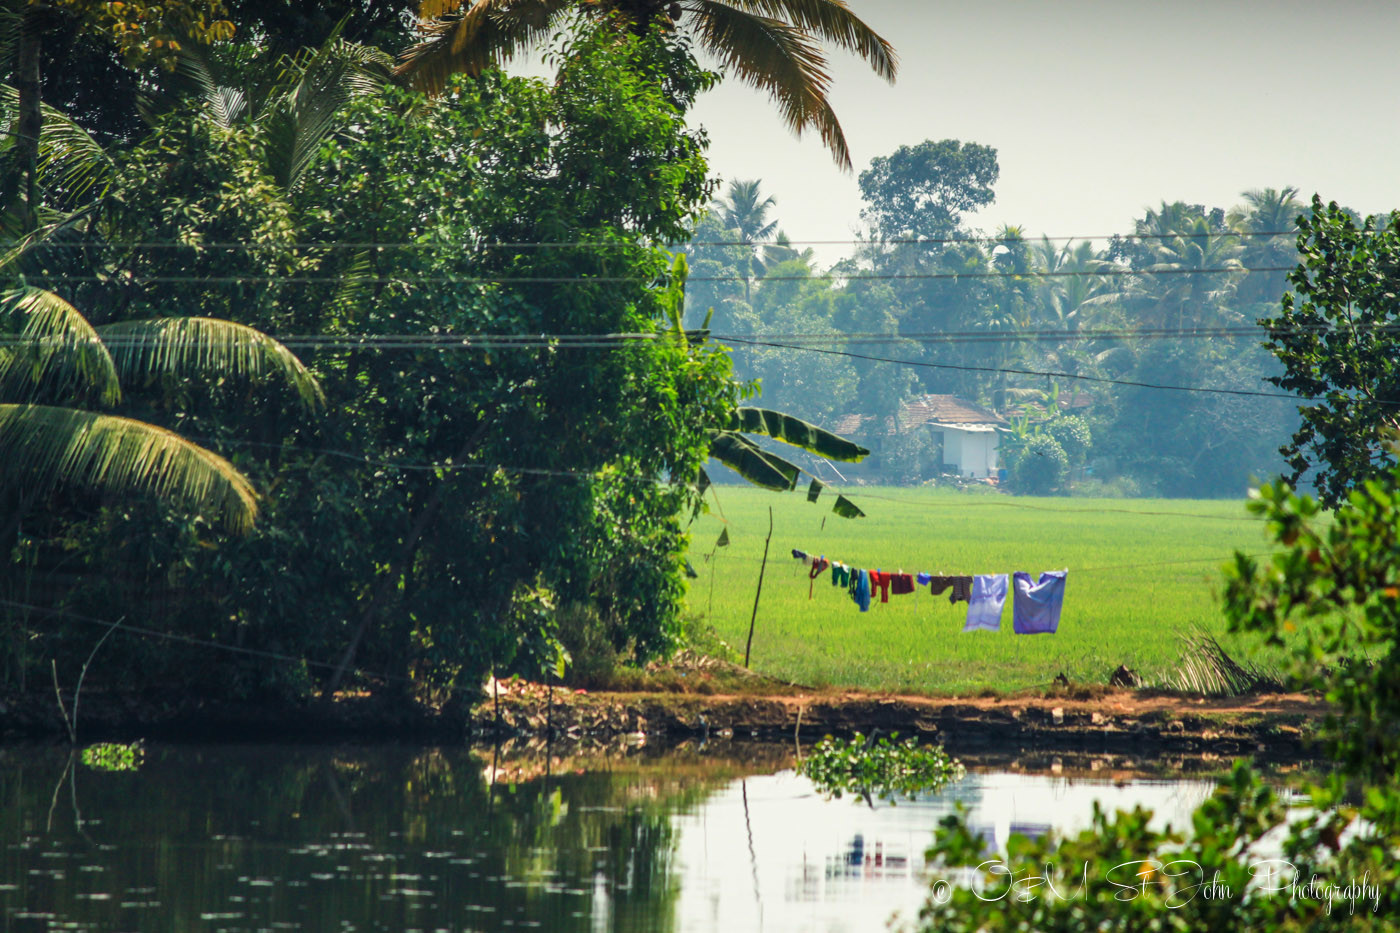 Kerala Backwaters. India